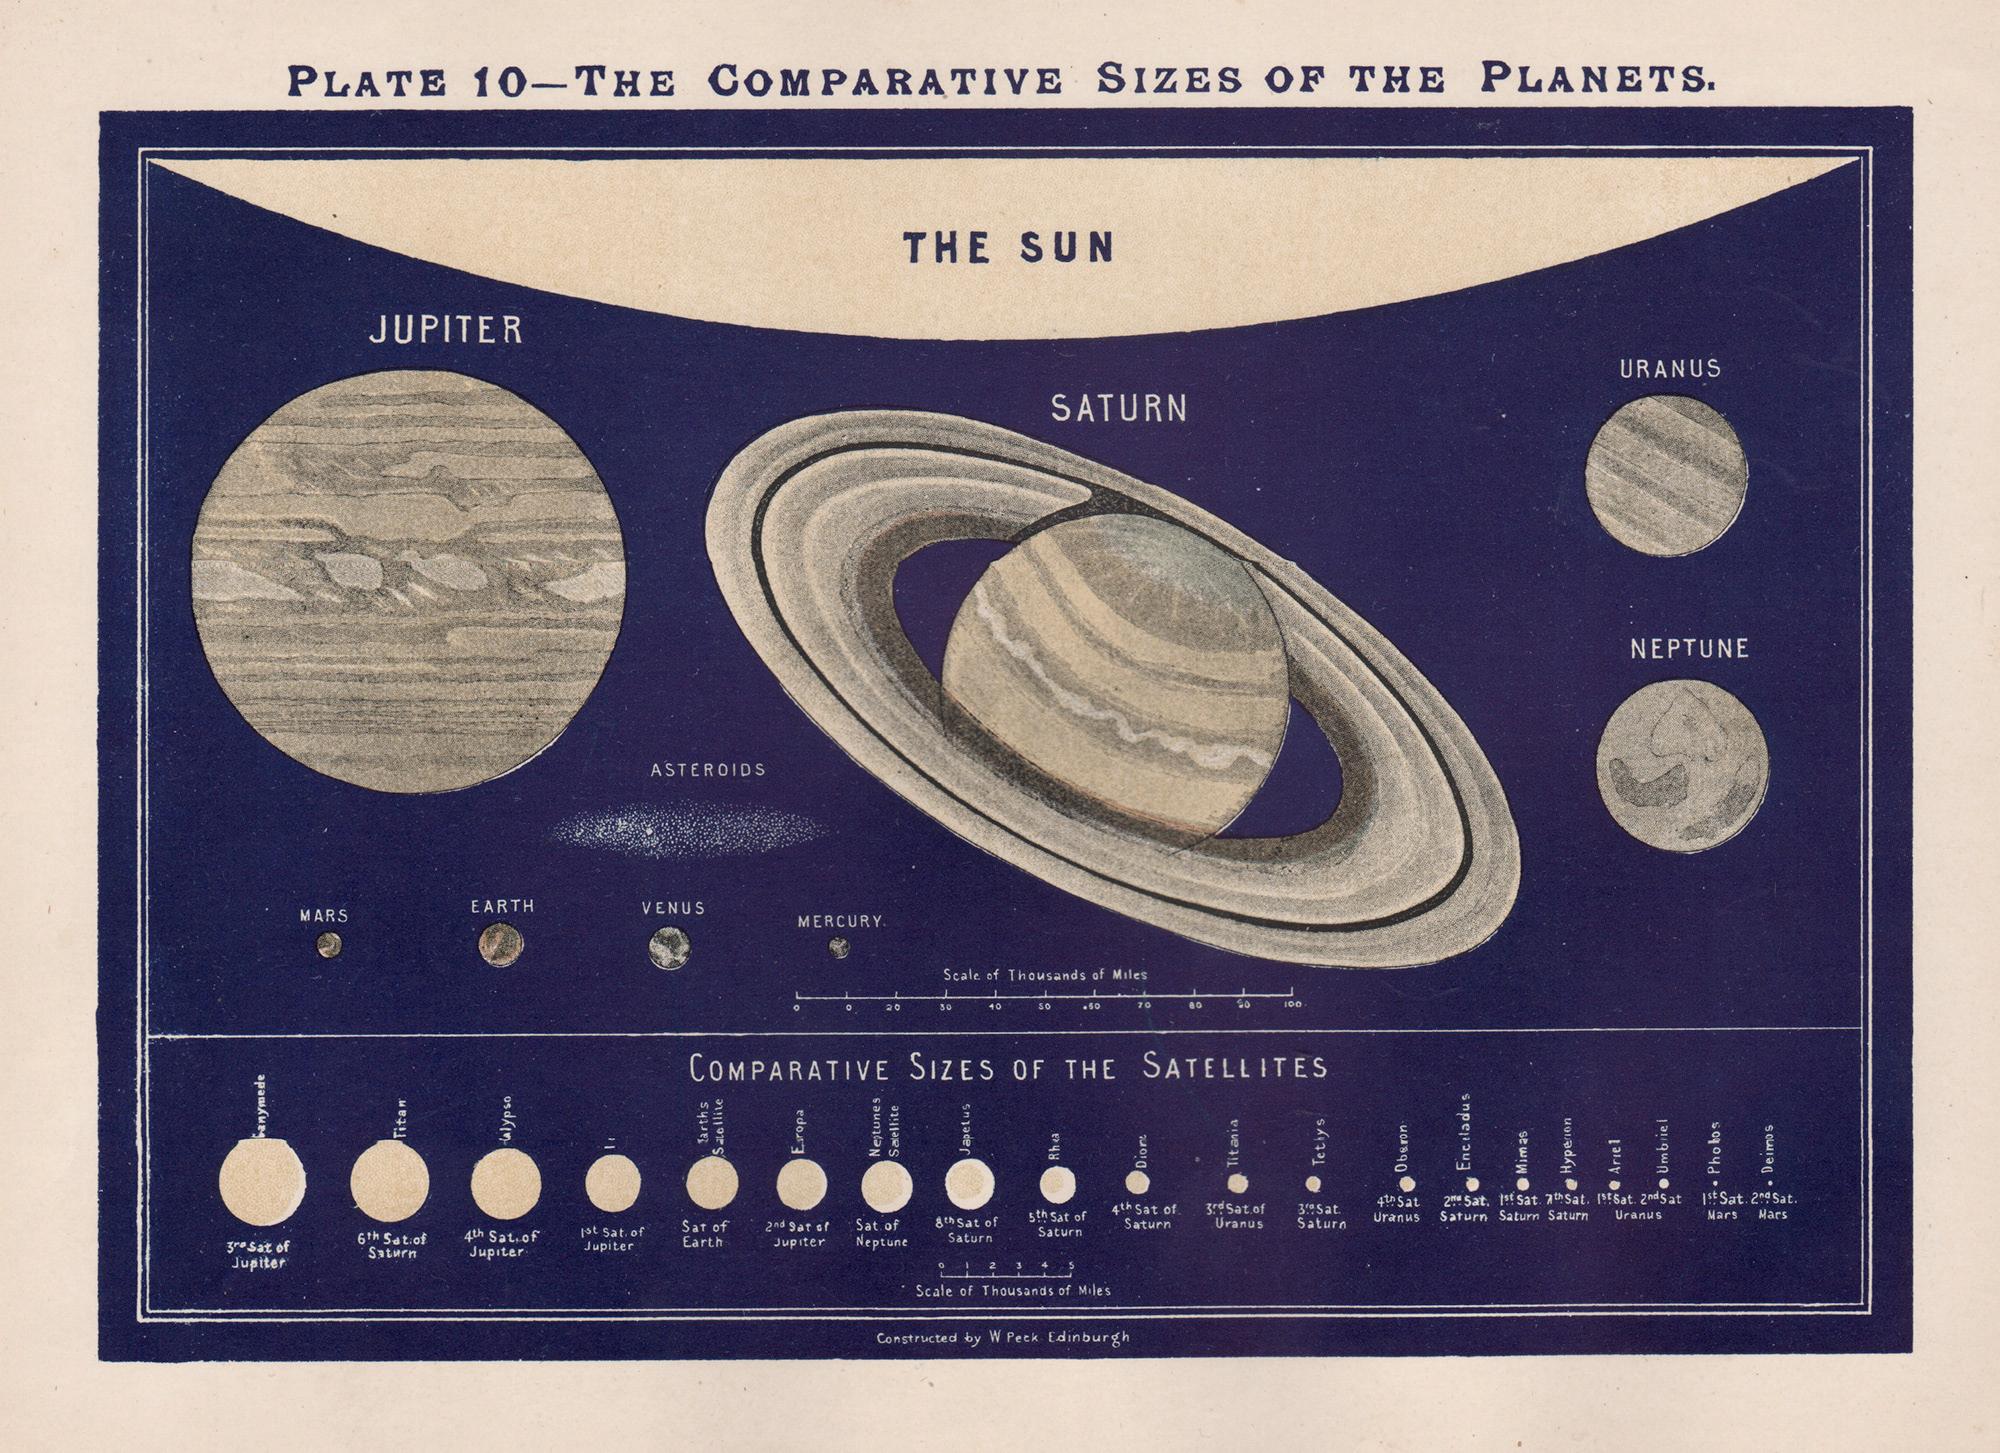 William Peck Abstract Print – Vergleichbare Größen der Planeten. Antikes Astronomenisches Diagramm